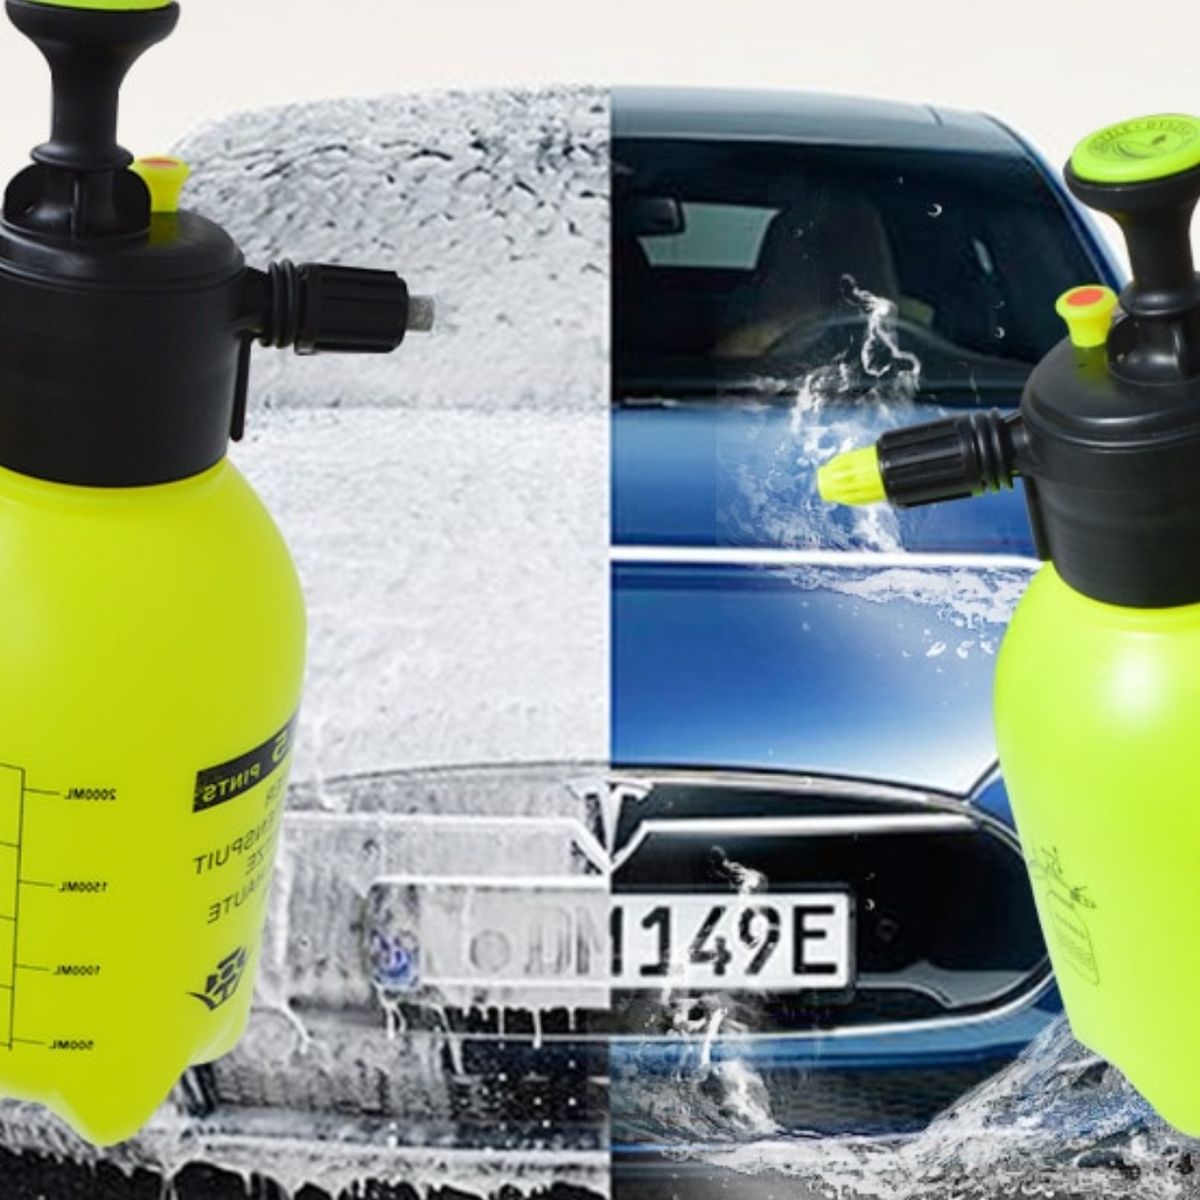 Pulverizador de espuma para lavar el coche como un profesional por 14 euros